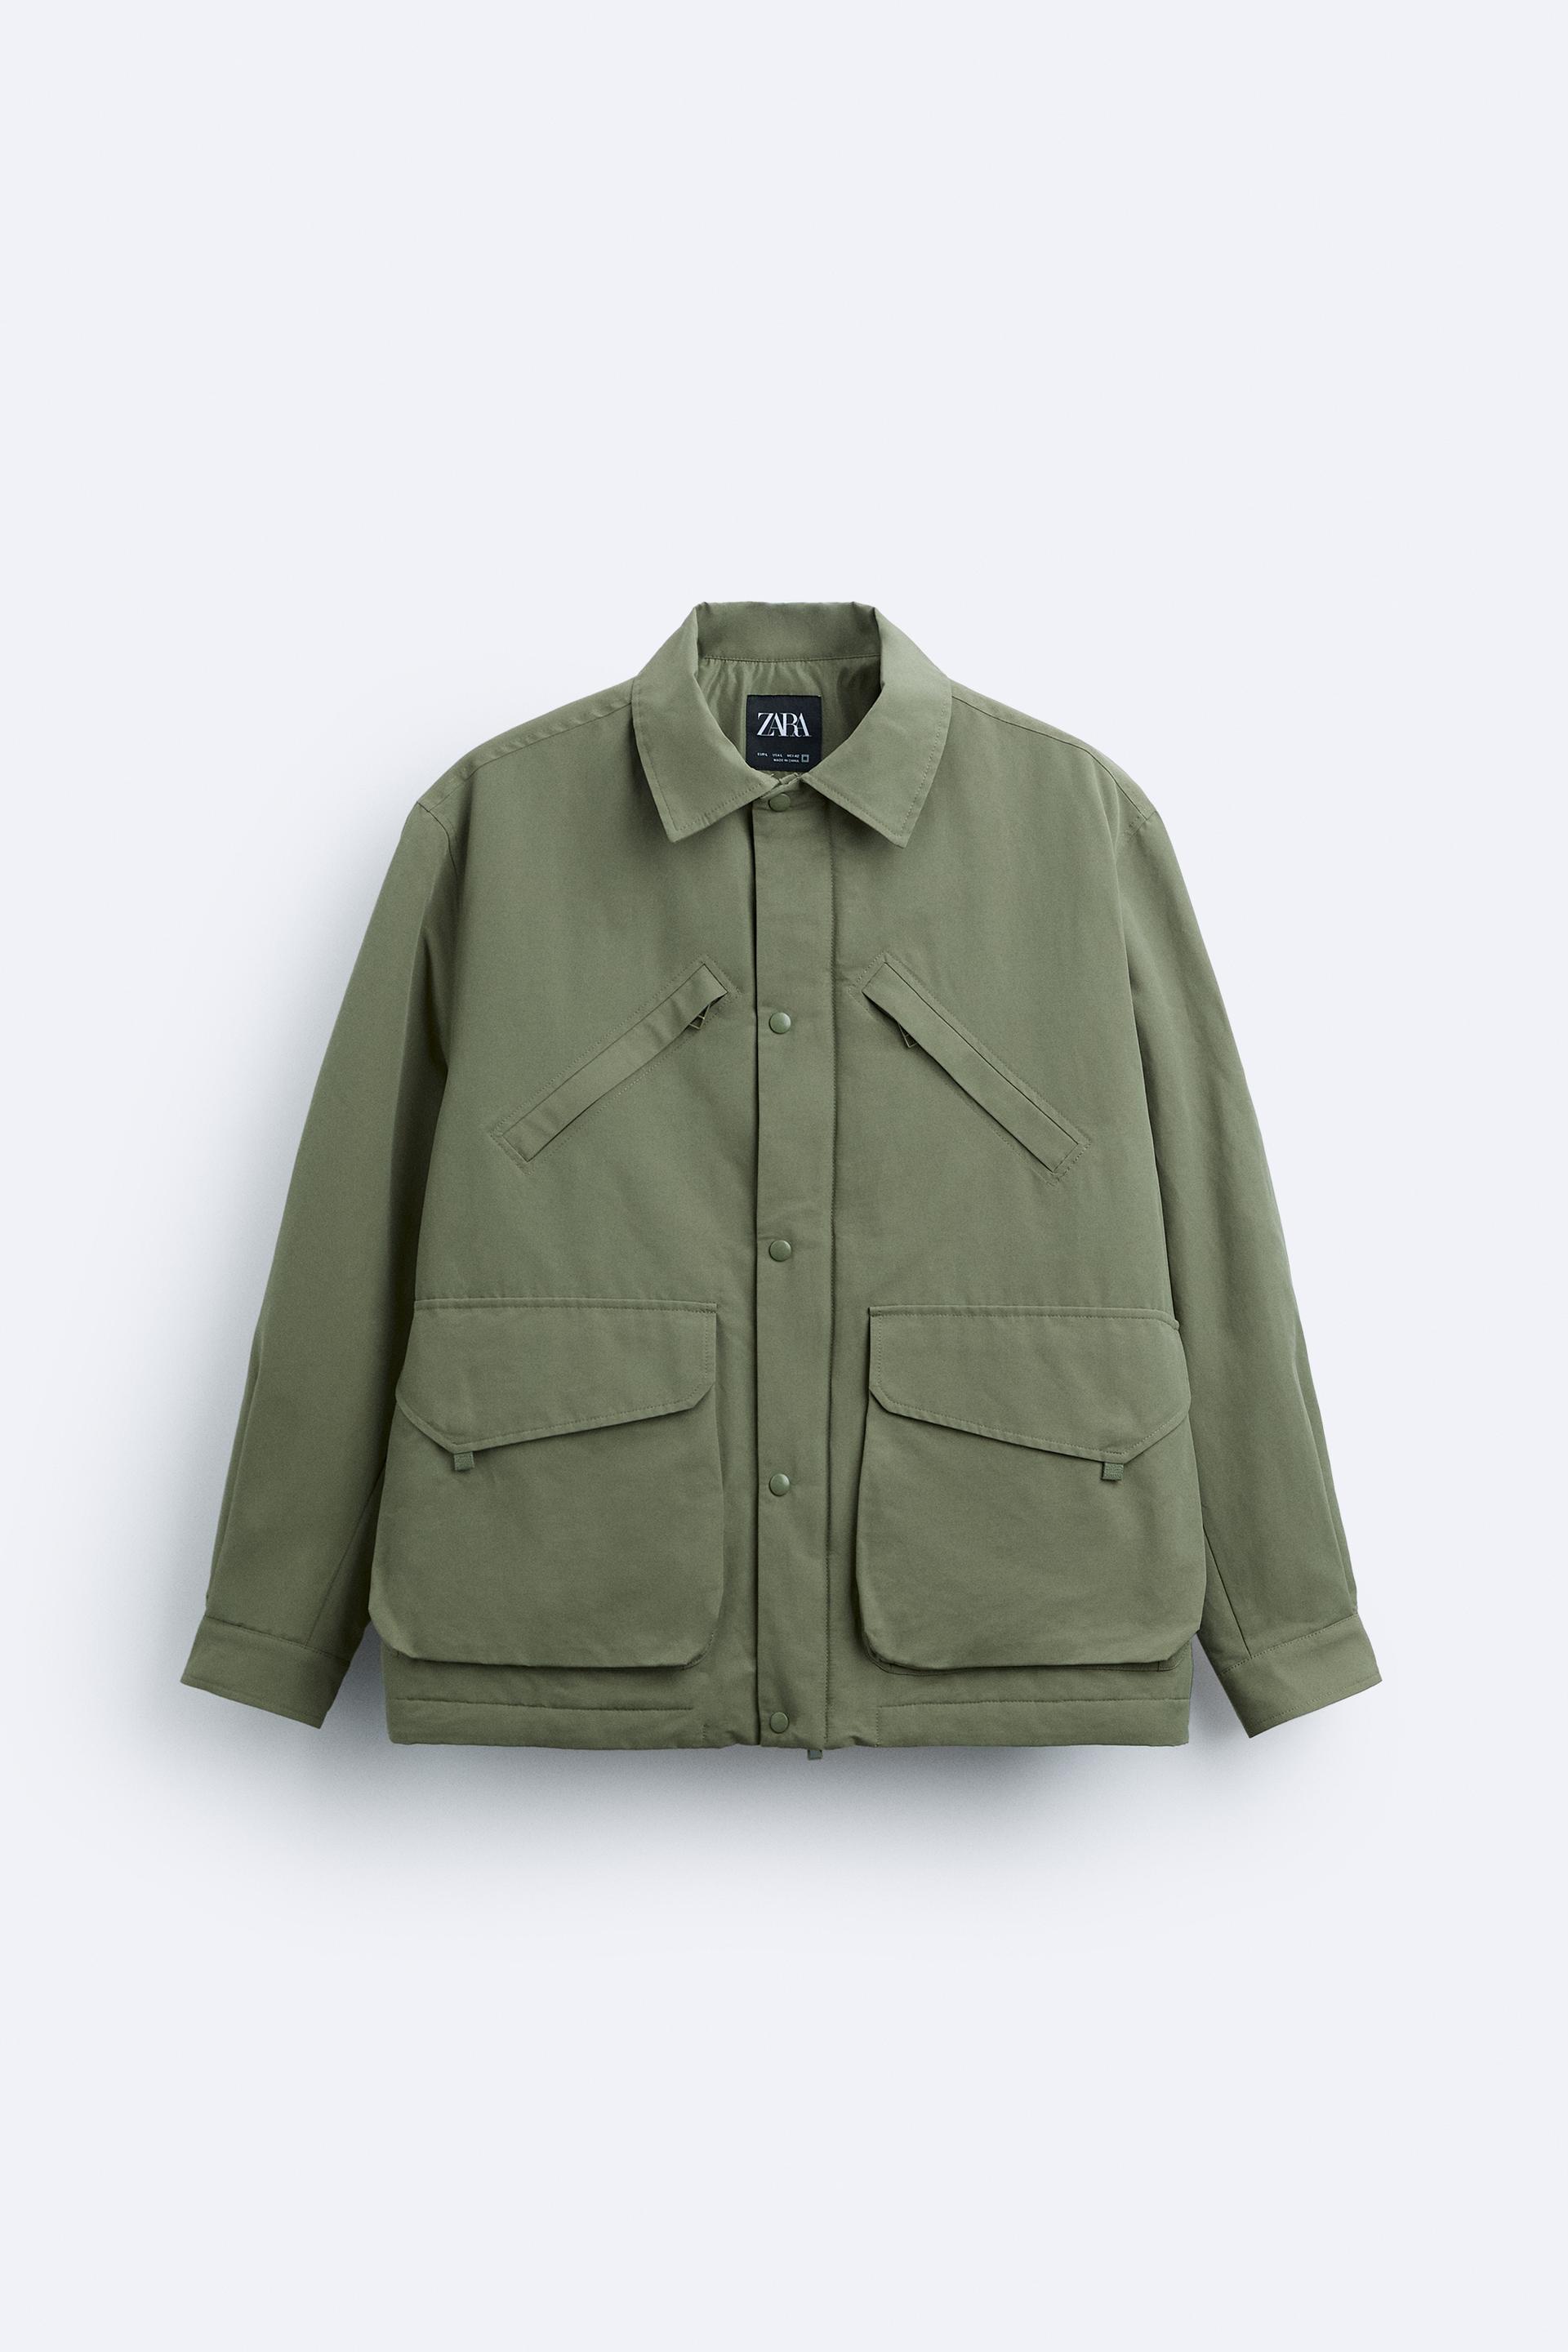 Balmoral - Dk Khaki - Utility Jacket 4 Pocket Zip Detail, Coats & Jackets